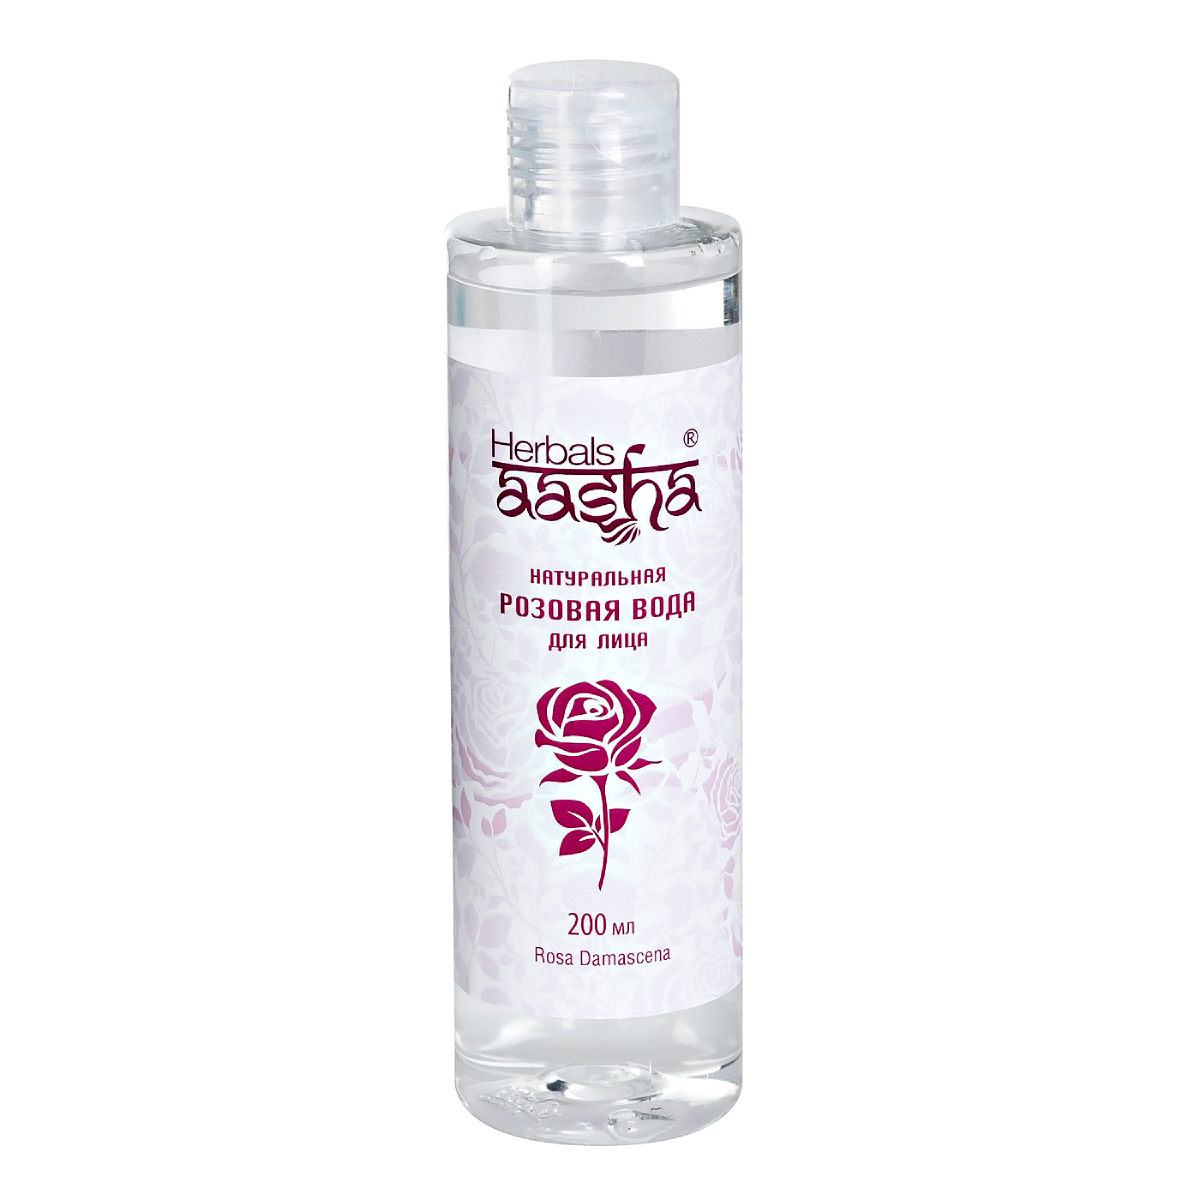 Натуральная розовая вода Aasha Herbals для лица, 200 мл натуральное кокосовое масло aasha herbals 100 мл